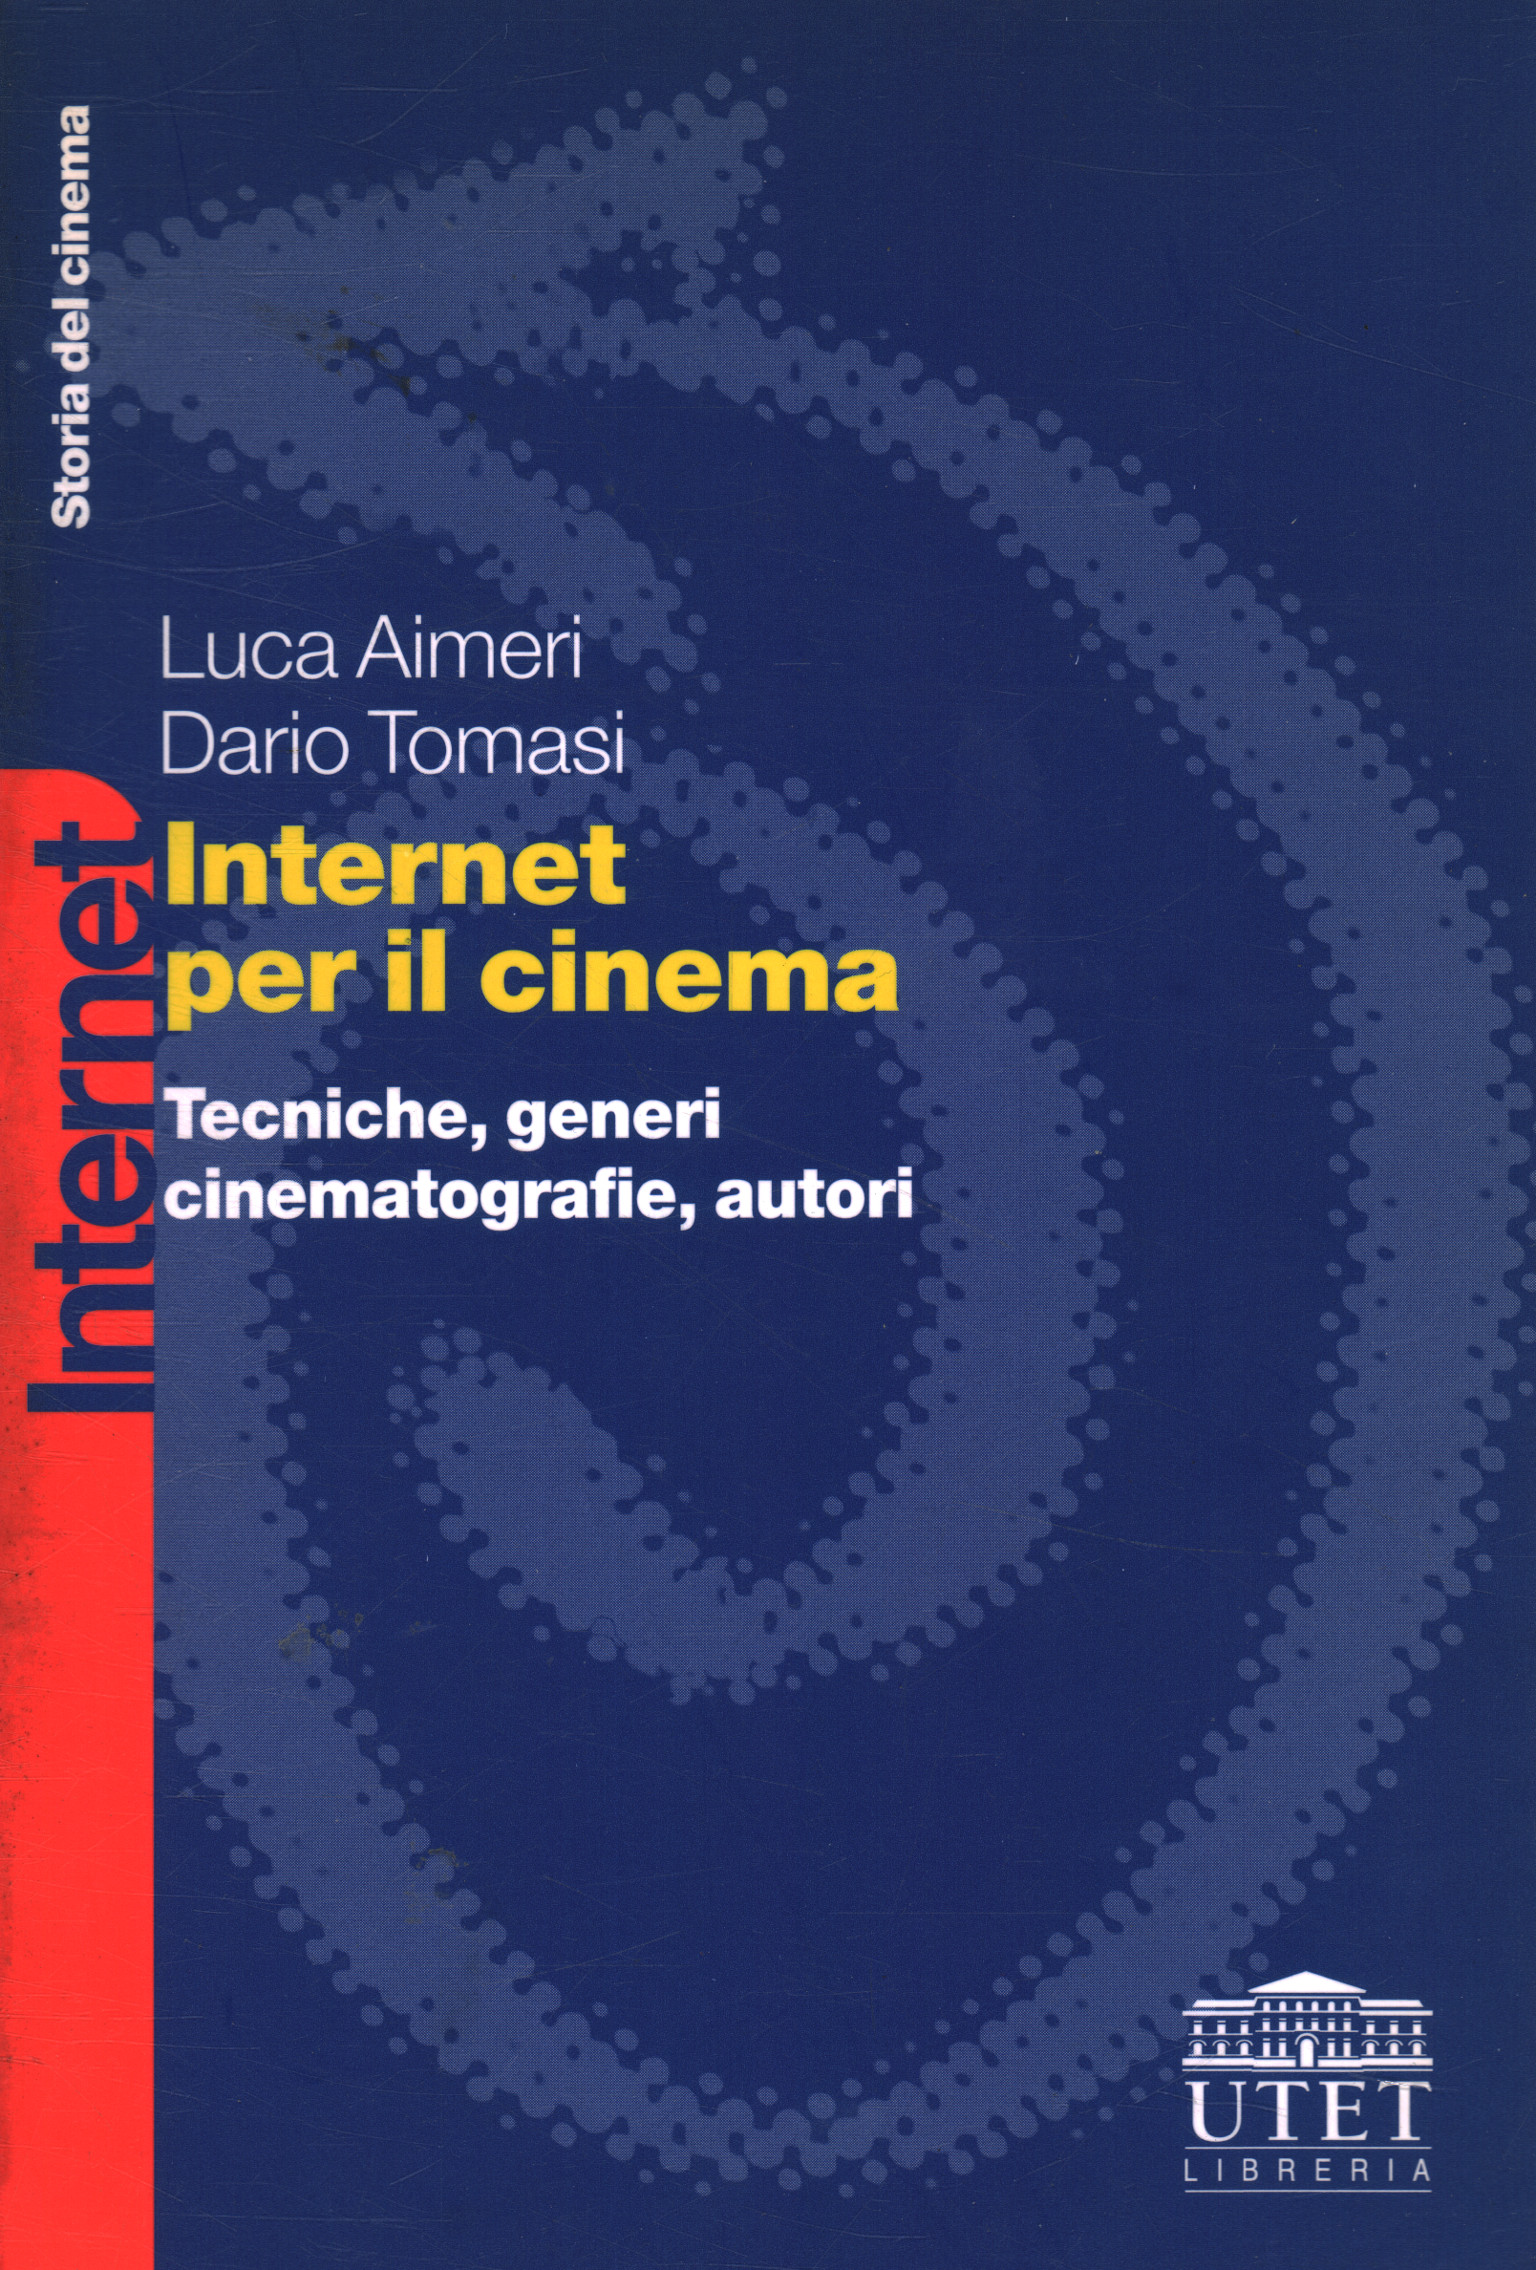 Internet para el cine